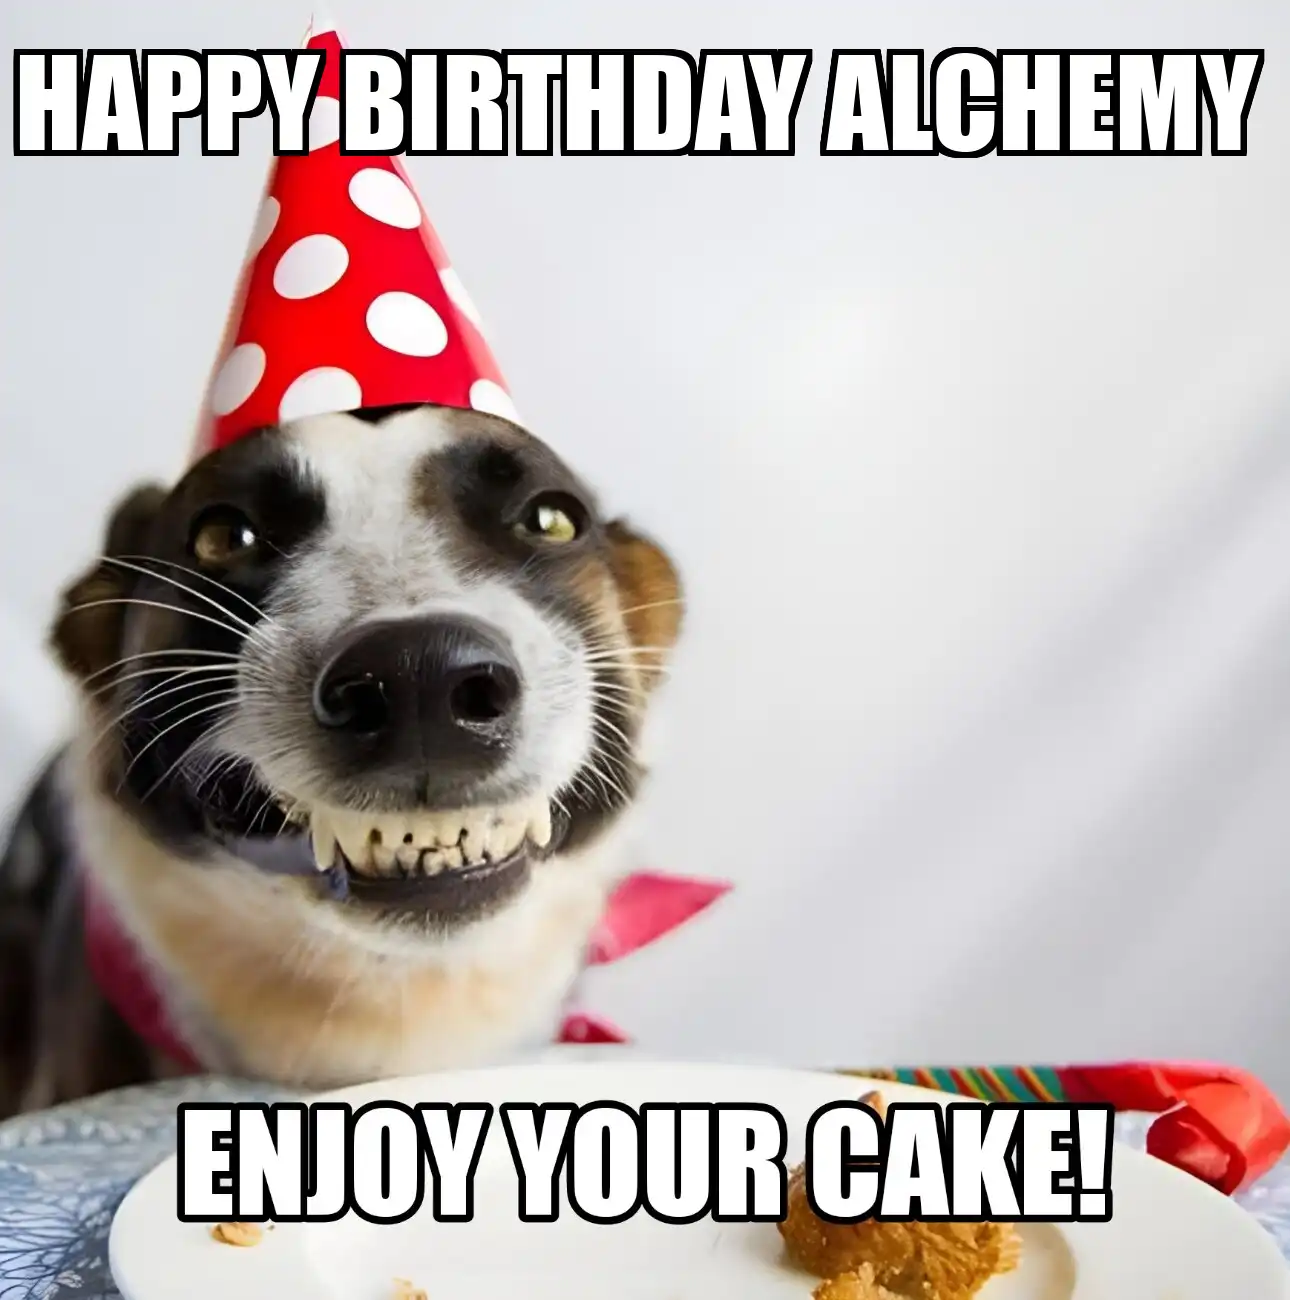 Happy Birthday Alchemy Enjoy Your Cake Dog Meme